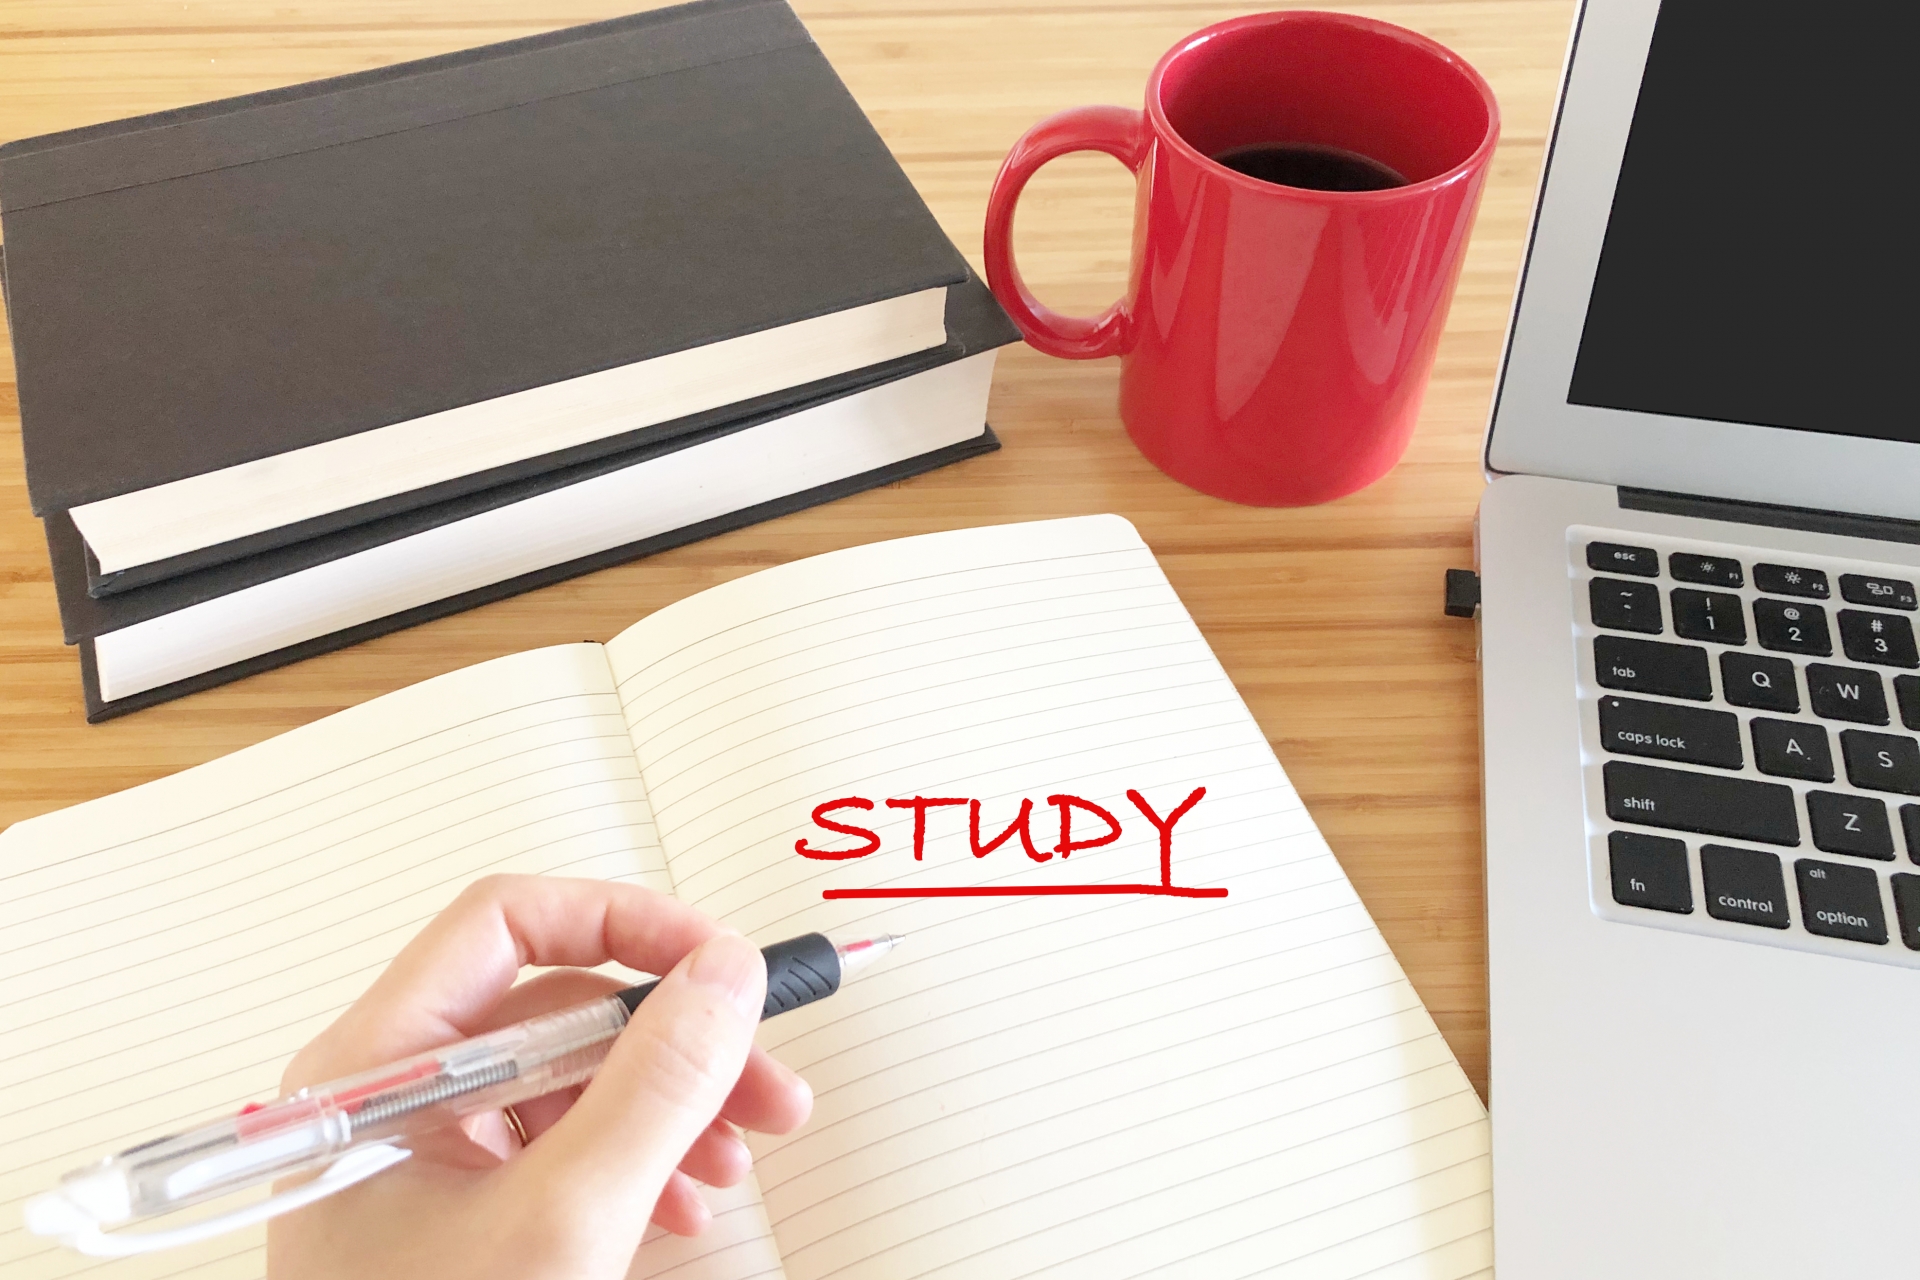 STUDYと赤ペンで書いている。パソコンとコーヒー